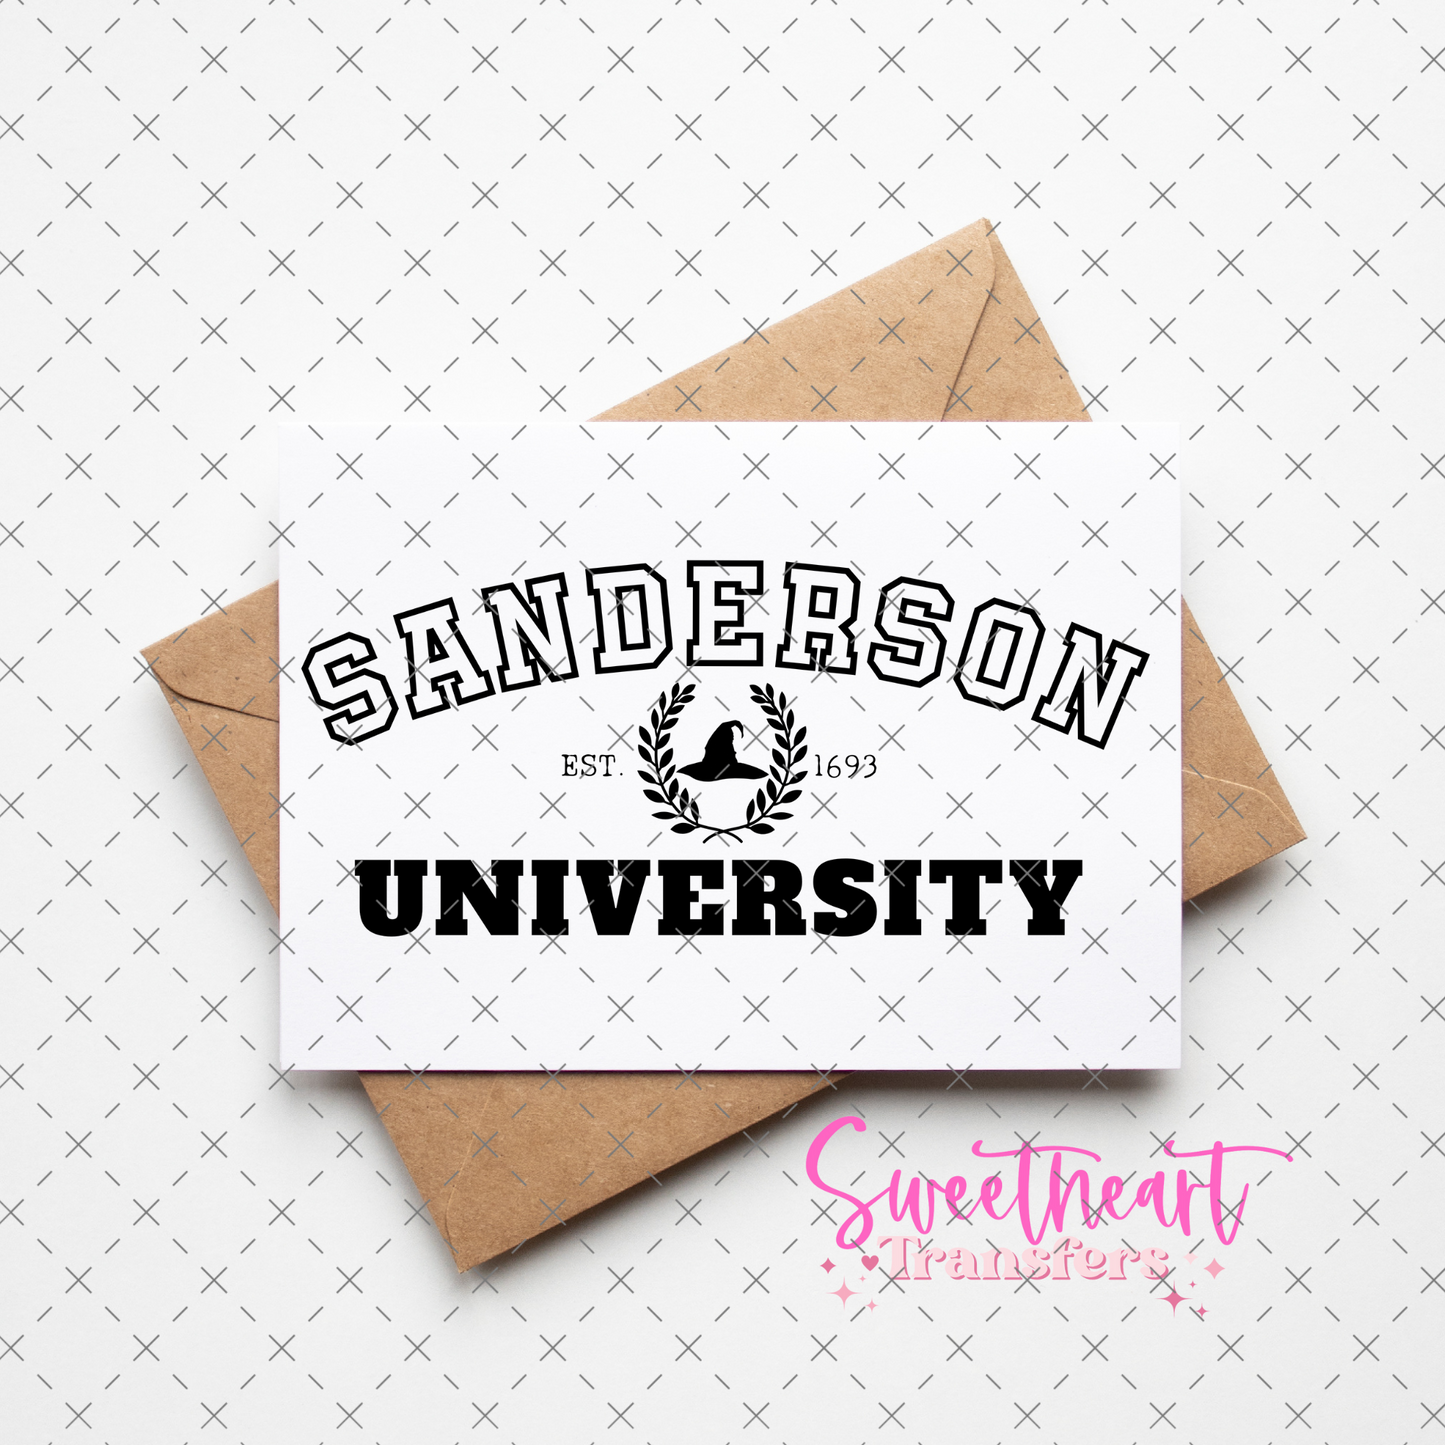 SUBLIMATION- Sanderson University